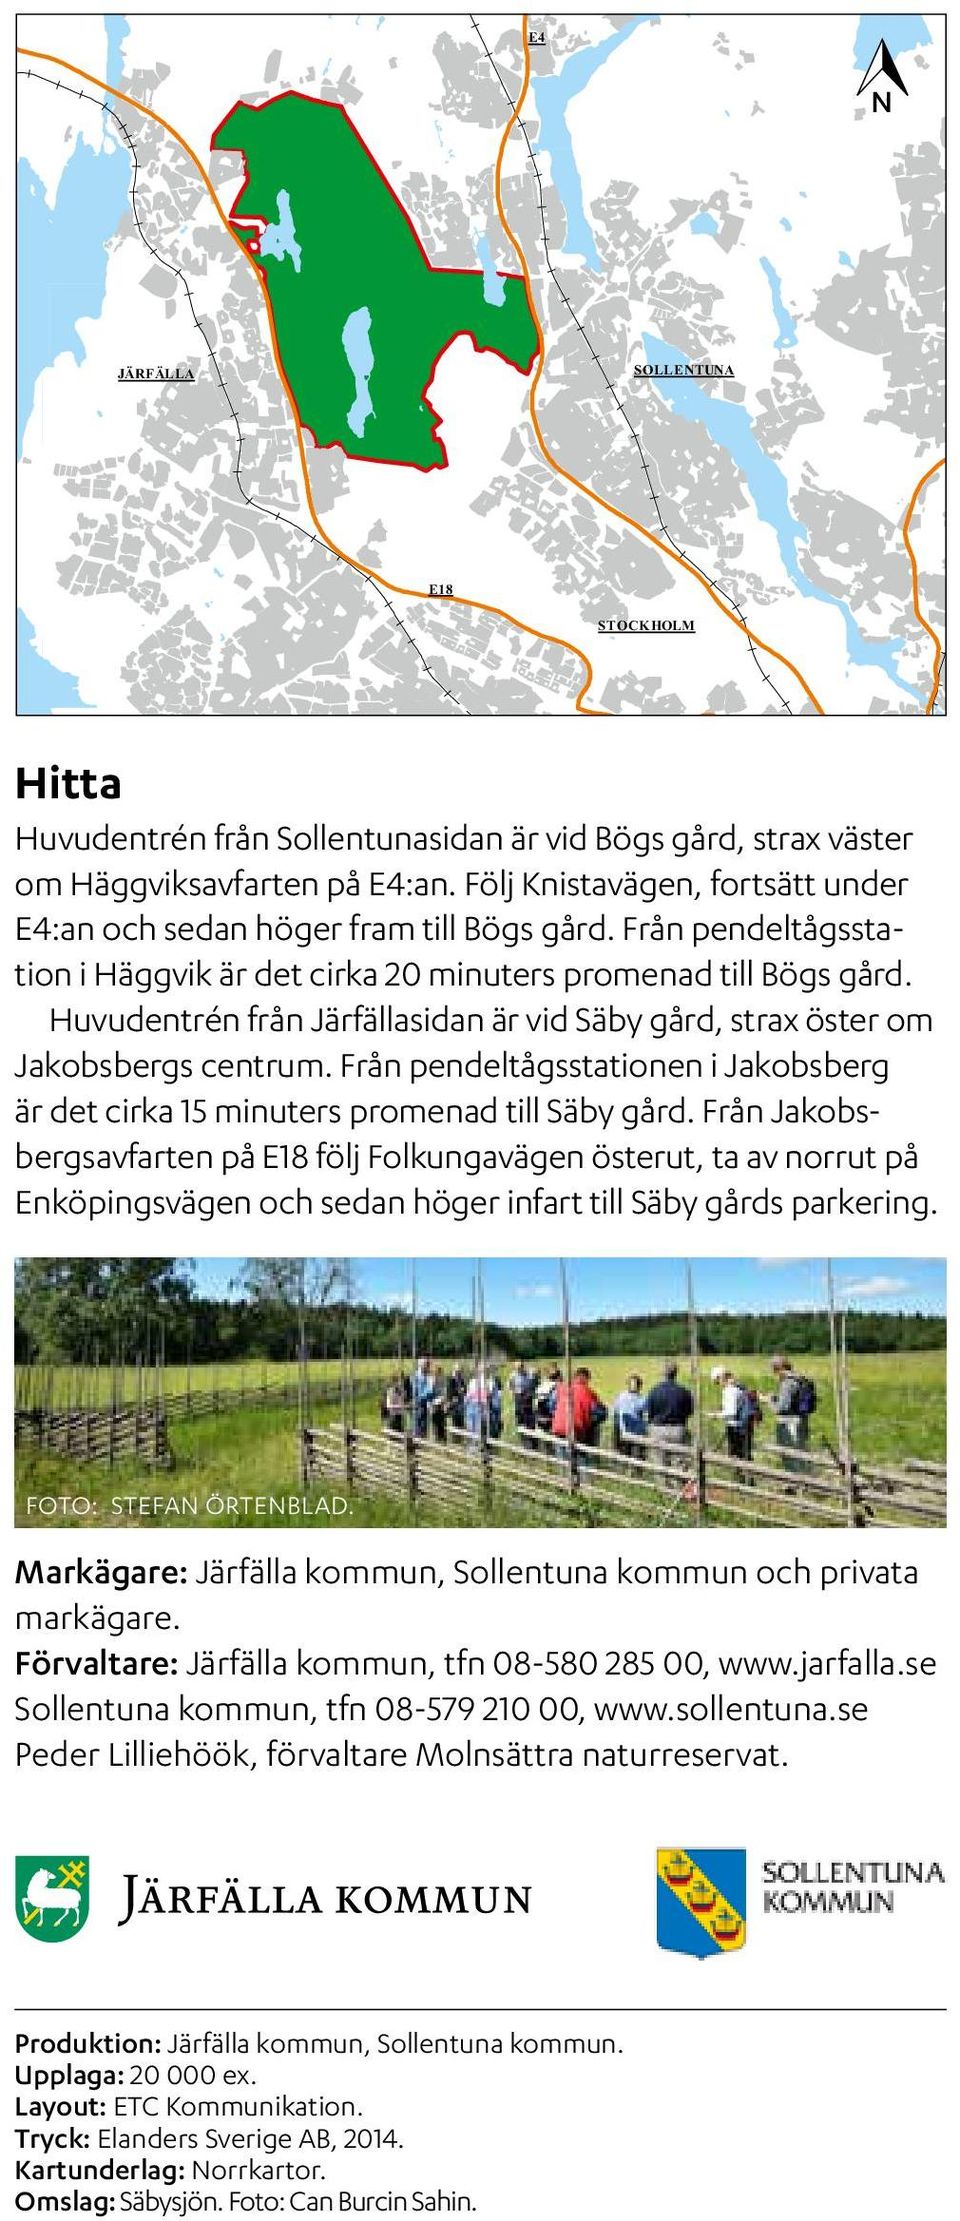 Huvudentrén från Järfällasidan är vid Säby gård, strax öster om Jakobsbergs centrum. Från pendeltågsstationen i Jakobsberg är det cirka 15 minuters promenad till Säby gård.